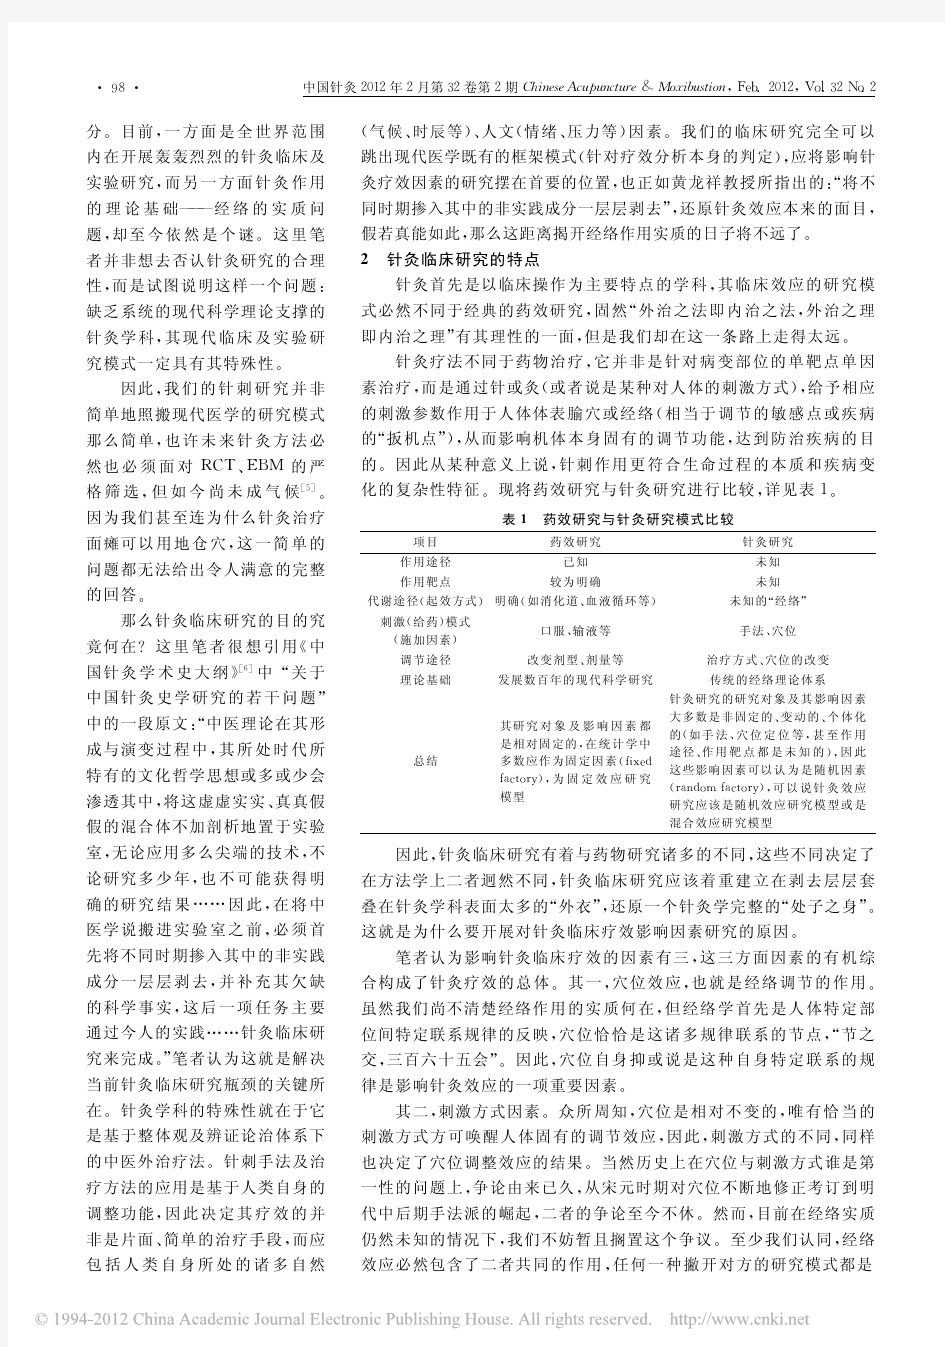 针灸效应临床研究模式的解构 林栋和吴强老师发在《中国针灸》杂志上的,大家可以看下